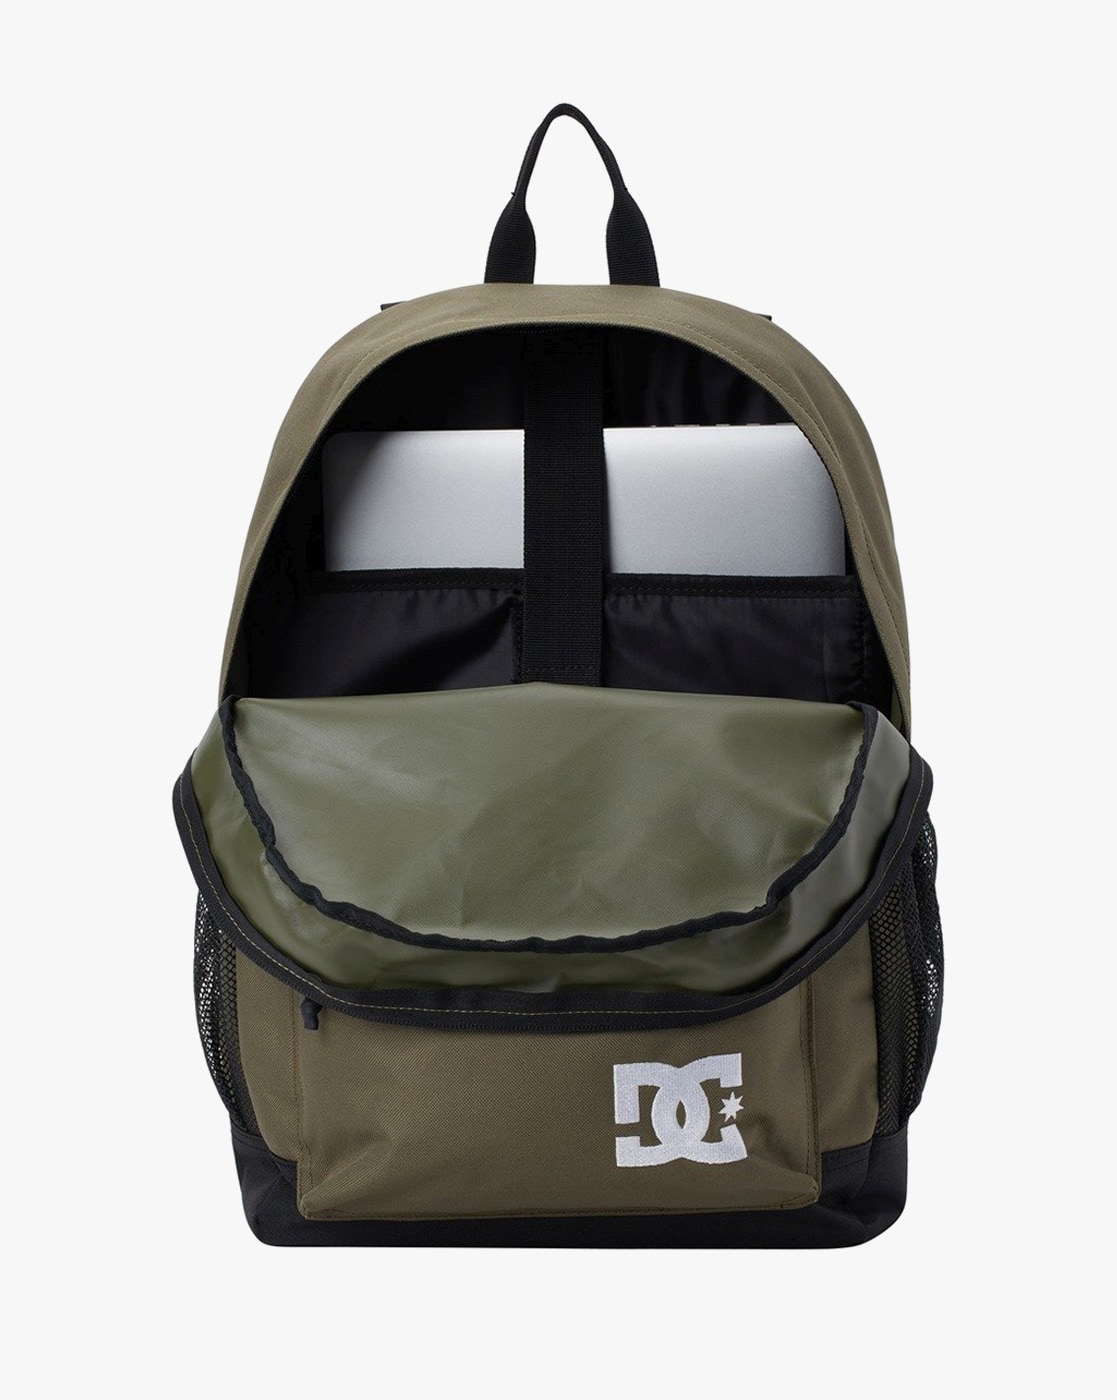 DC Comics Batman Duffel Bag, Comics Duffel Bag, Batman Bag, Men's Gym Bag |  eBay